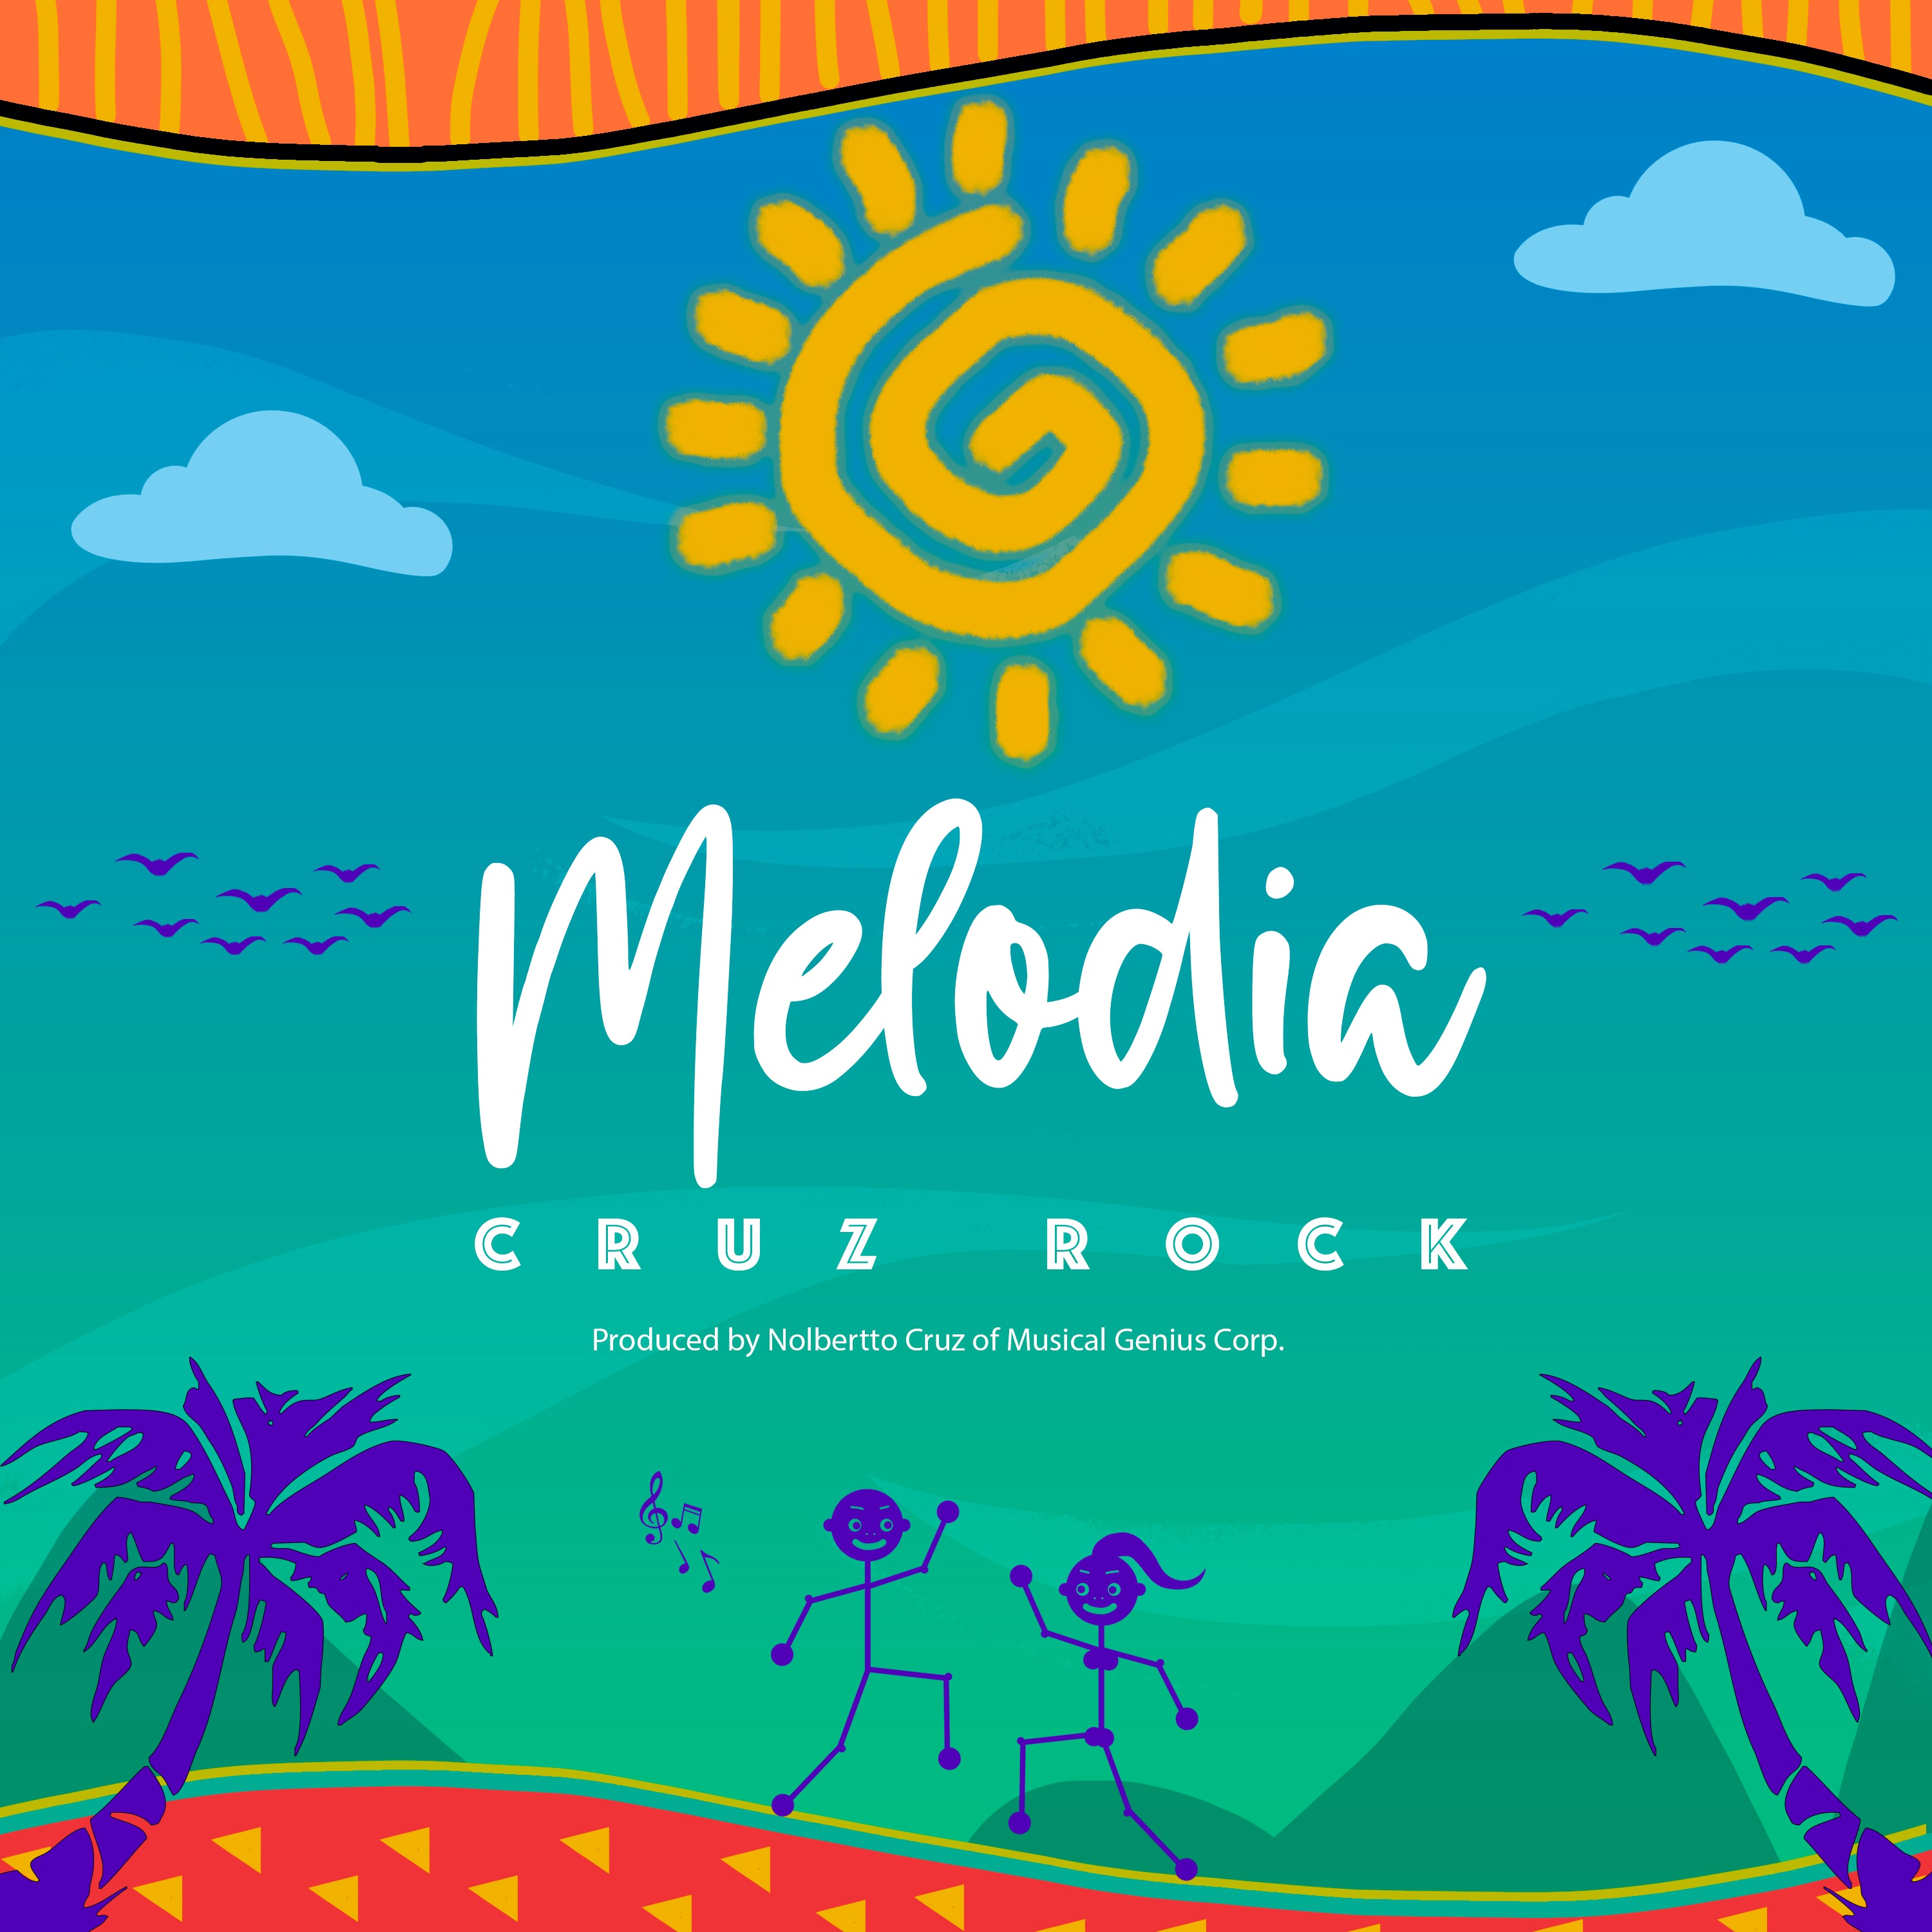 Sii mai Melodia by Cruz Rock